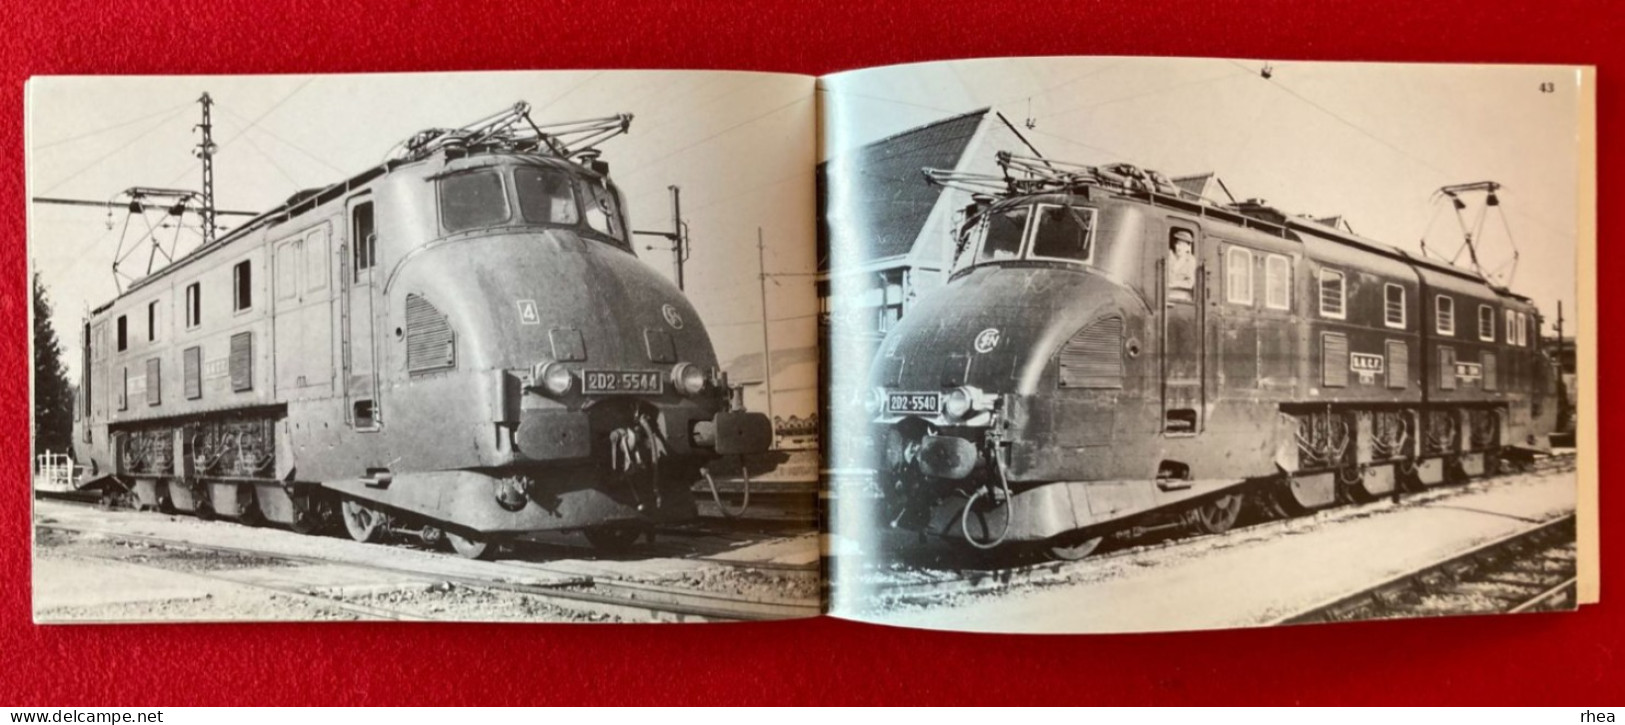 TRAINS - Livret SOUVENIRS DES 2D2 5400 et 5500, locomotives, chemins de fer, 24 pages, 1981